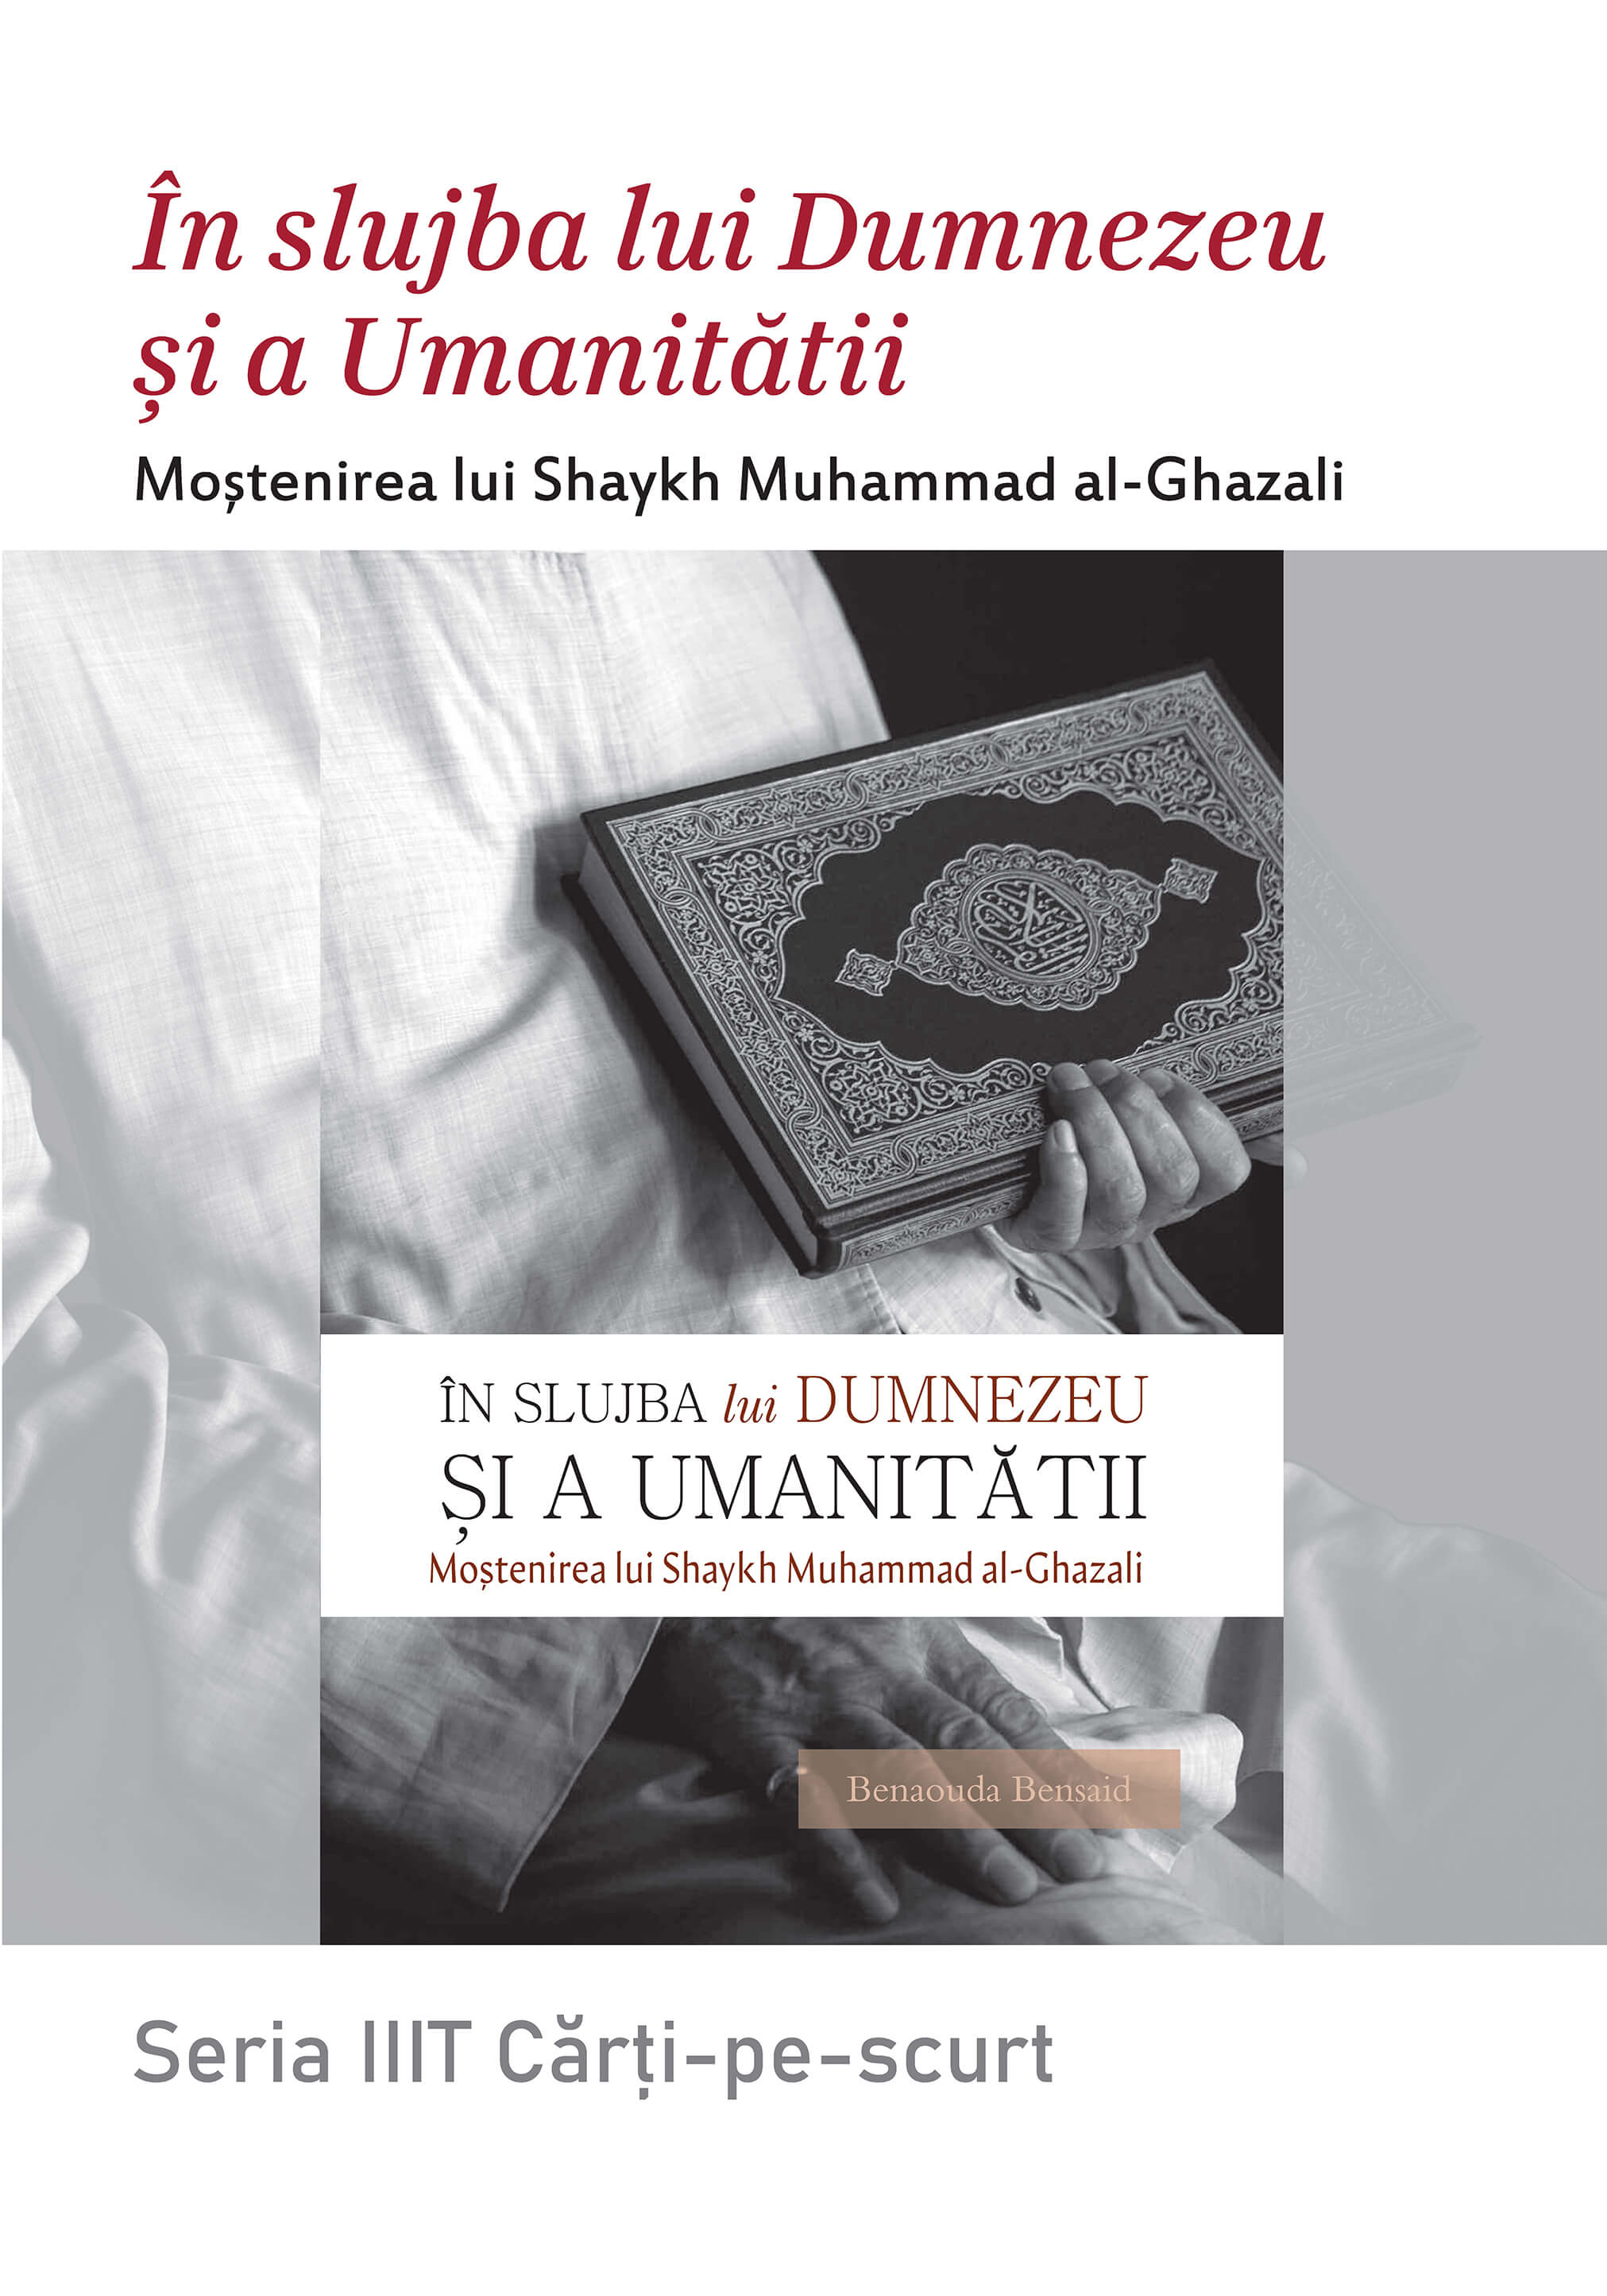 Romanian: Seria Cărți-pe-scurt: În slujba lui Dumnezeu și a umanității: Moștenirea lui Shaykh Muhammad al-Ghazali (Book In Brief: In Service of God and Humanity: The Legacy of Shaykh Muhammad al-Ghazali)